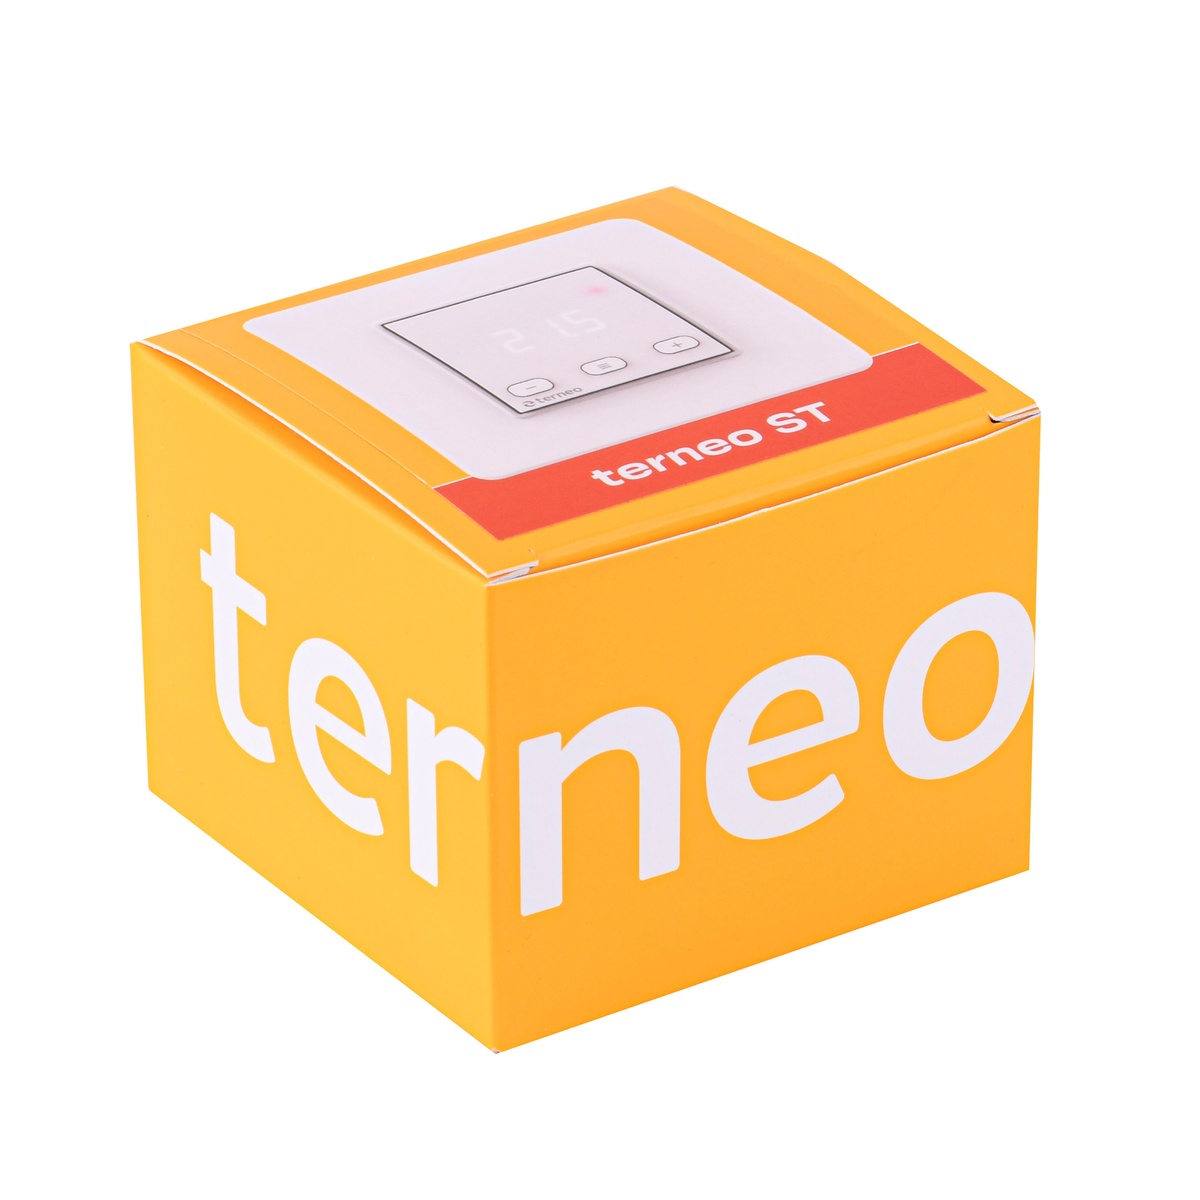 Кімнатный терморегулятор TERNEO ST механічний з програмуванням 000027917